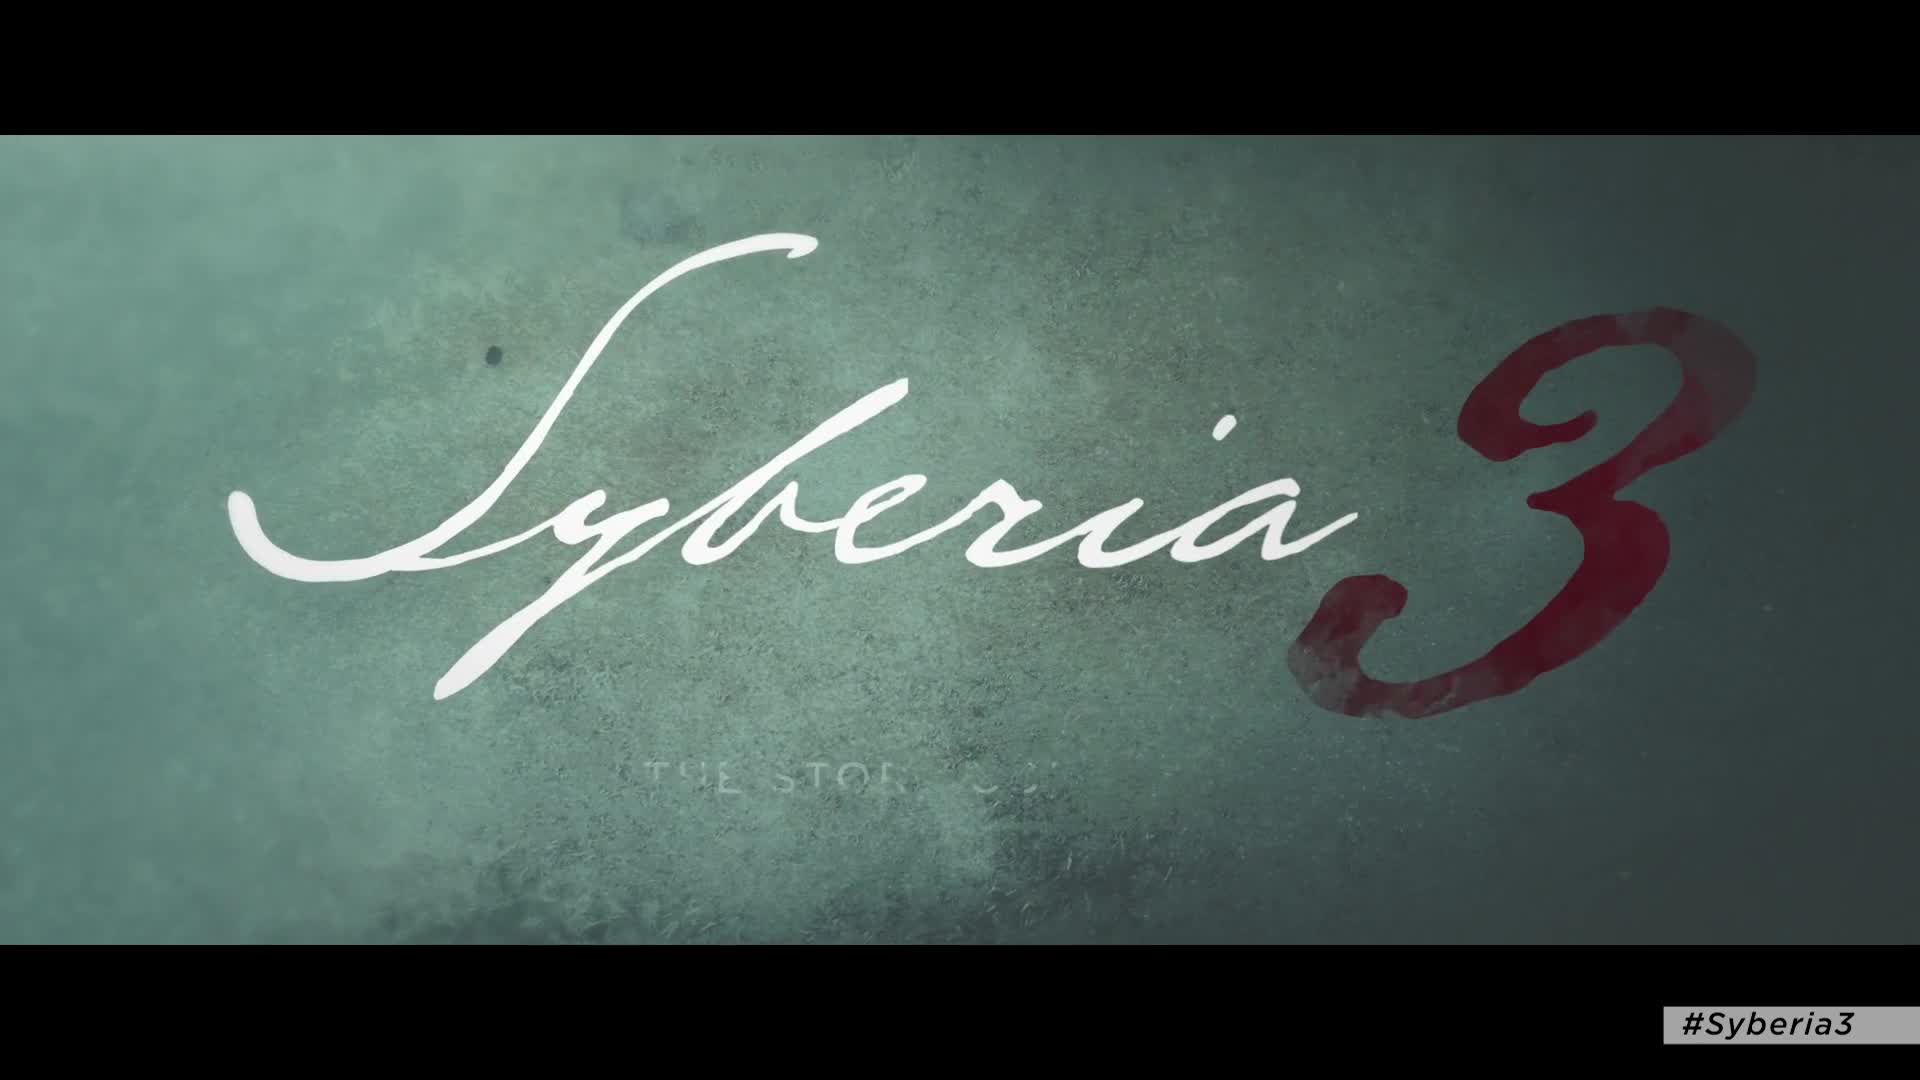 Syberia 3 - Gamescom 2016 trailer